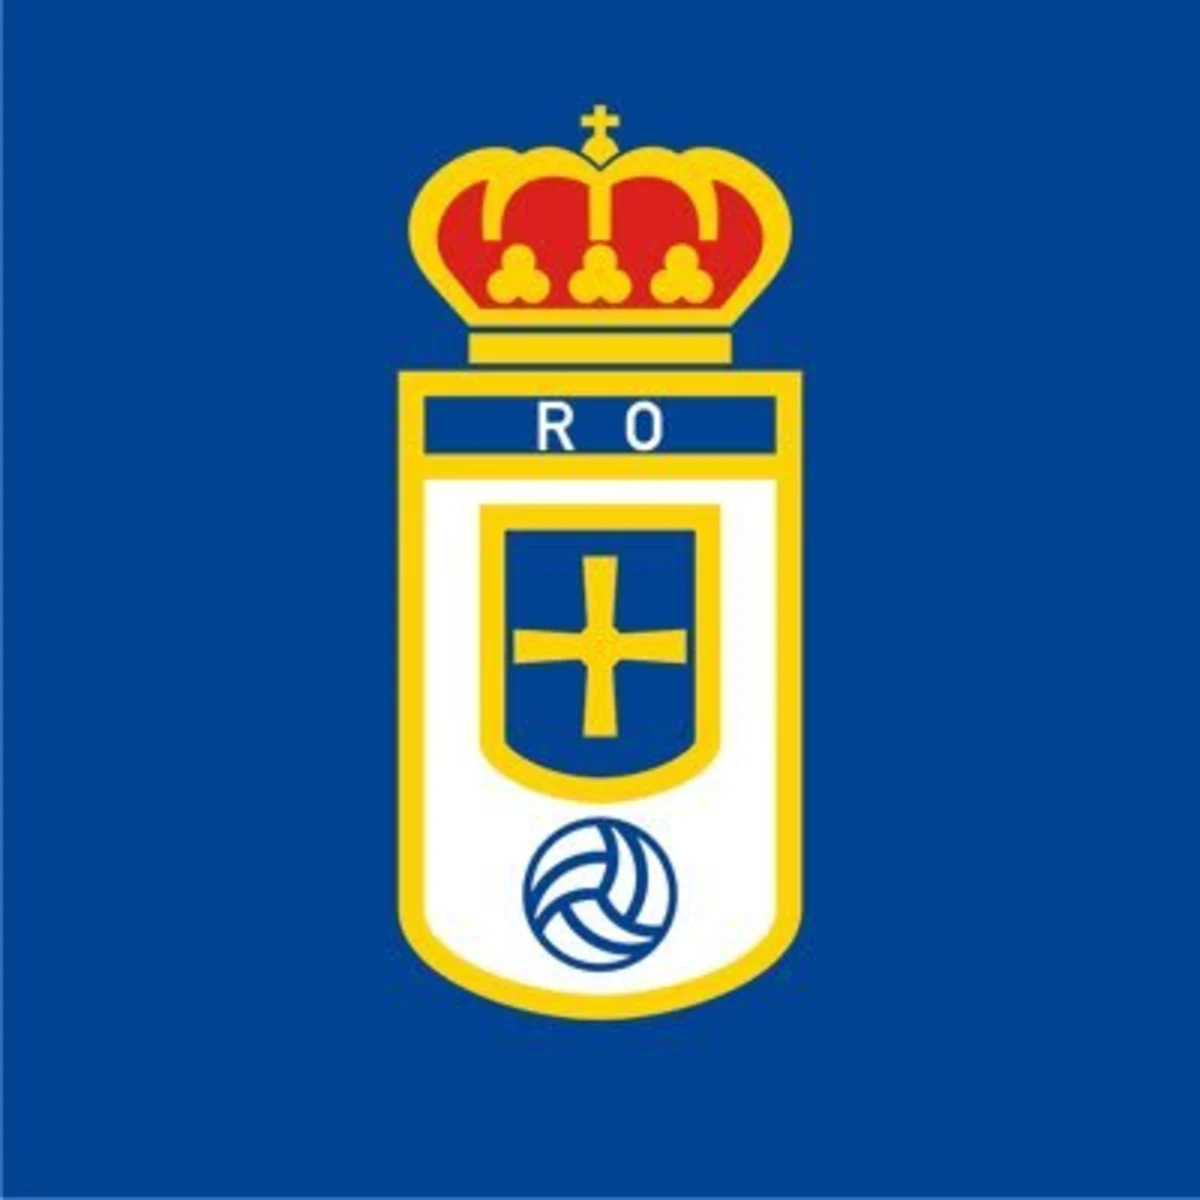 El escudo del Real Oviedo, equipo de La Liga Smartbank